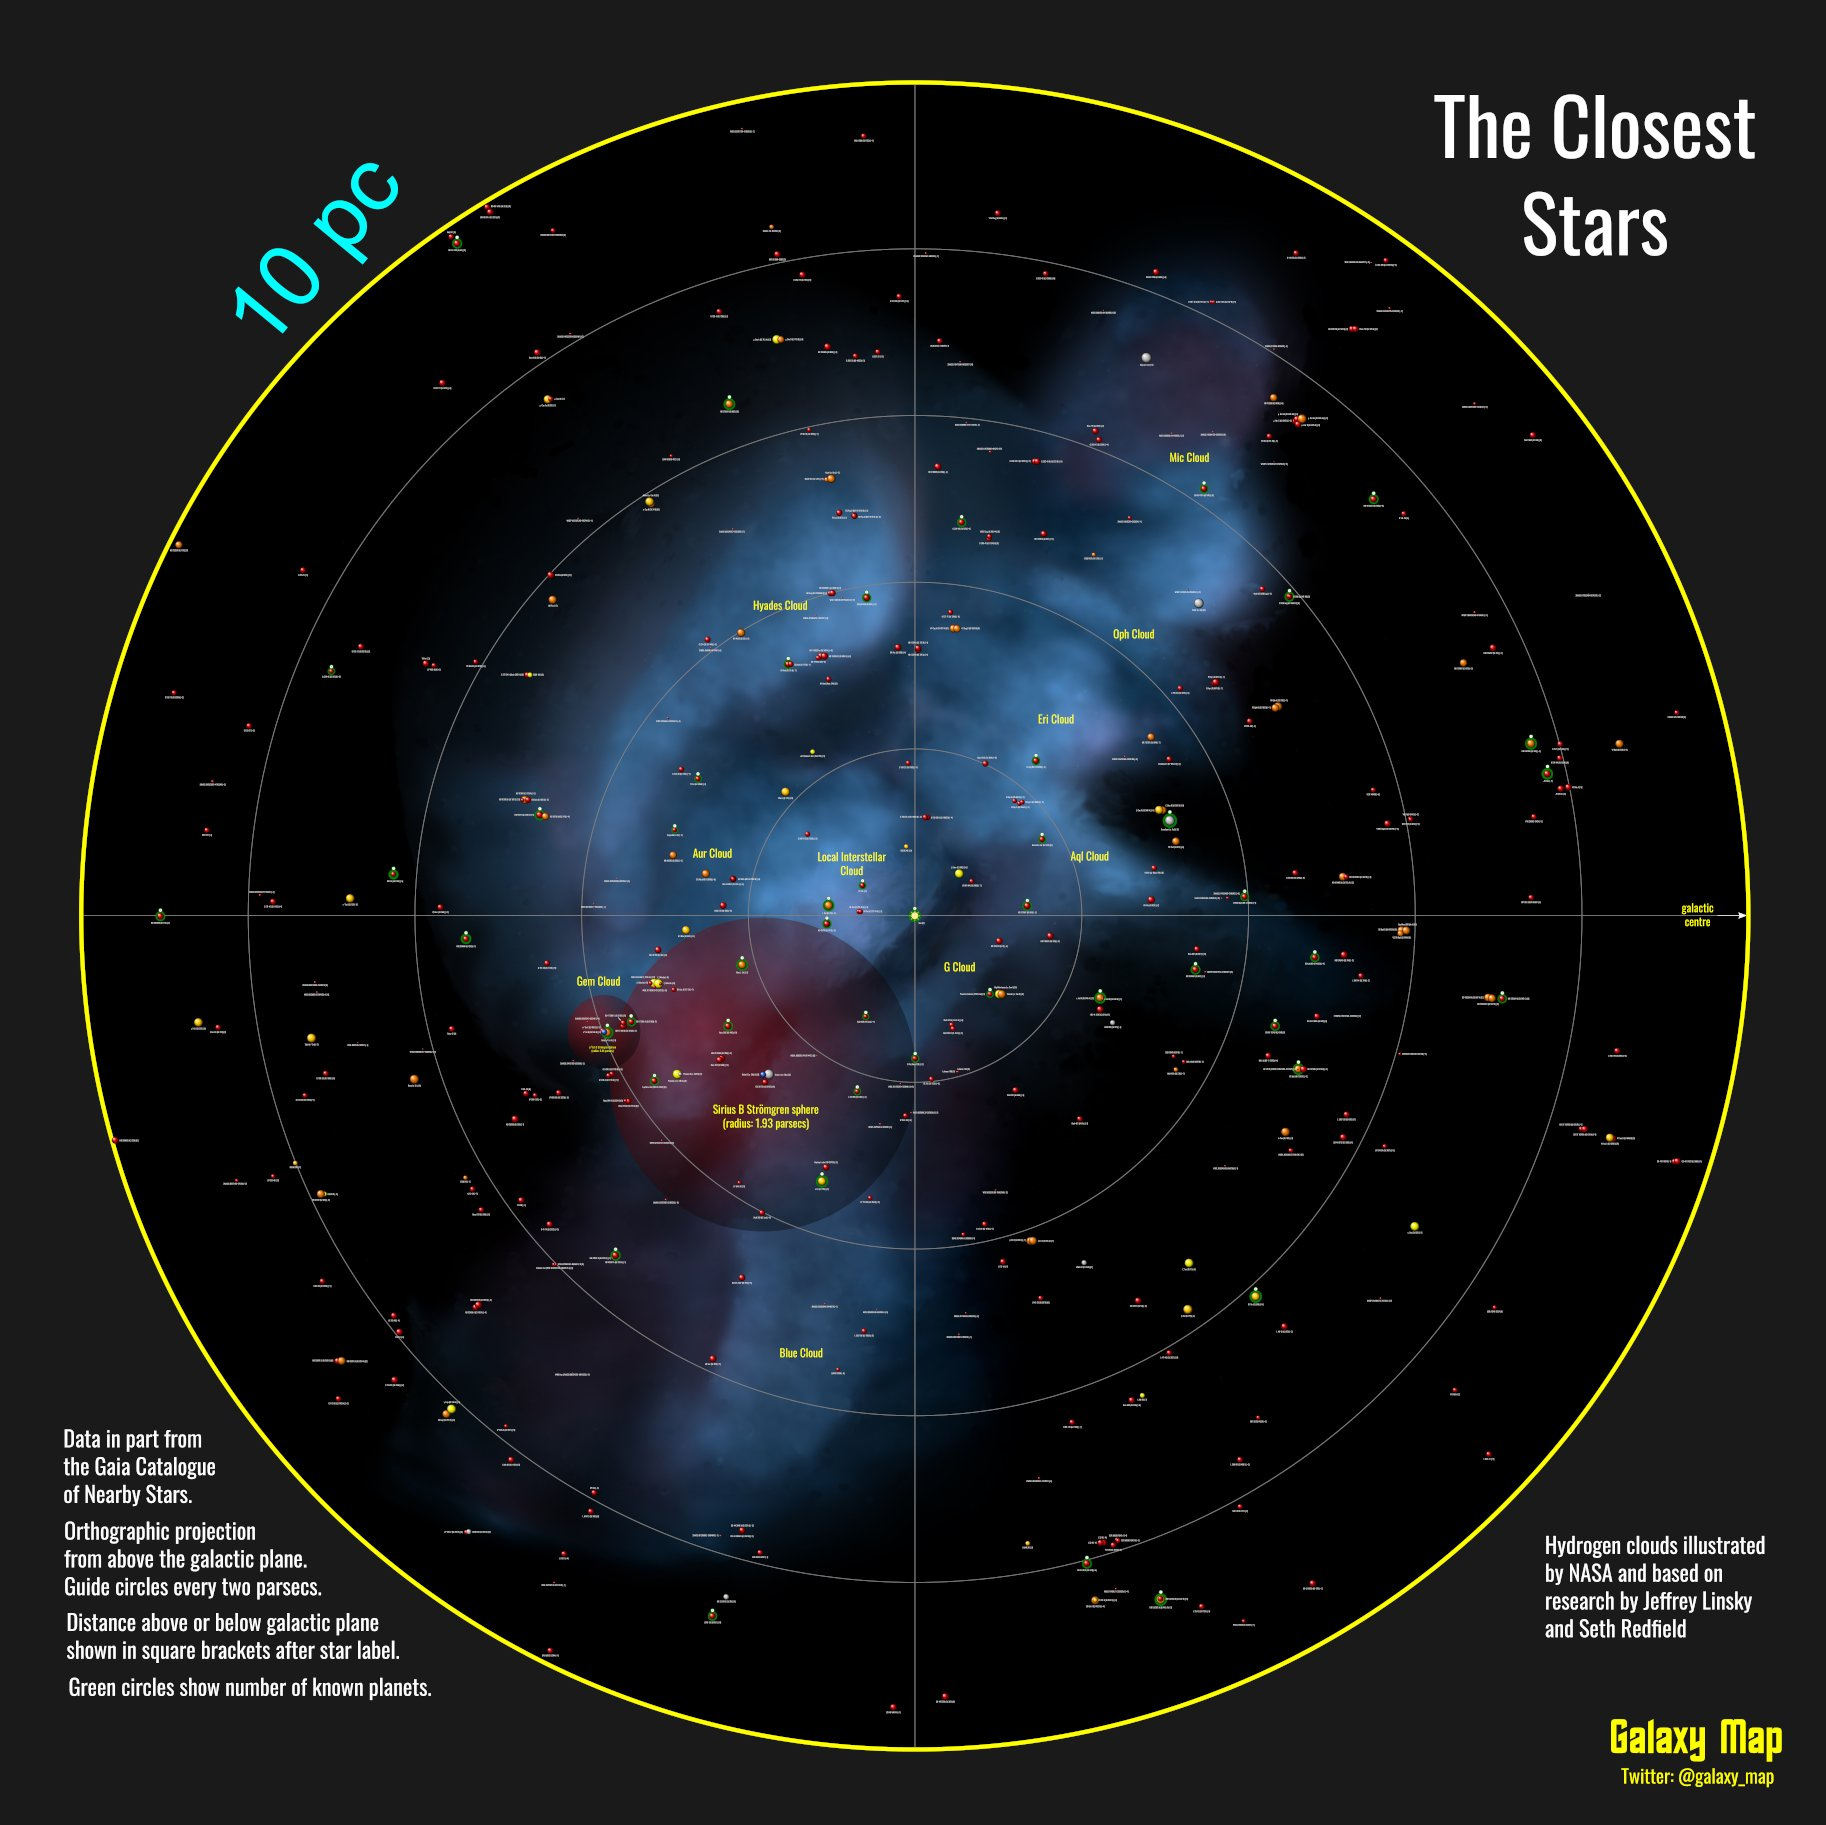 TheClosestStars_GalaxyMap_Gaia_10pc_20201213.jpg.1fd0116f7cf24291e65f5a5b83a8efbf.jpg